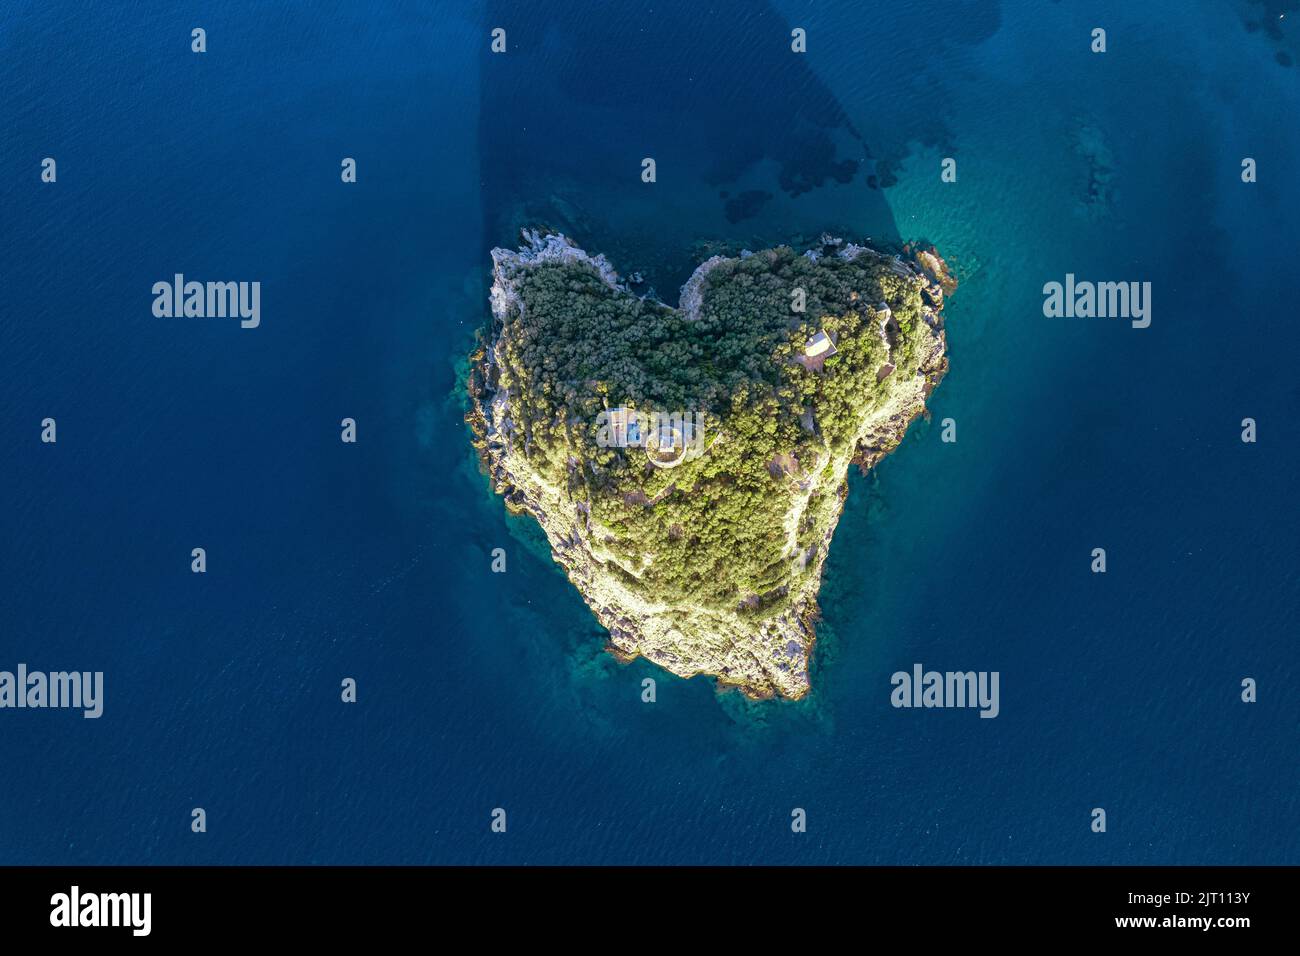 Vue aérienne depuis le dessus de la magnifique île naturelle en forme de coeur dans la mer Méditerranée le long de la côte de Ligurie, Italie Banque D'Images